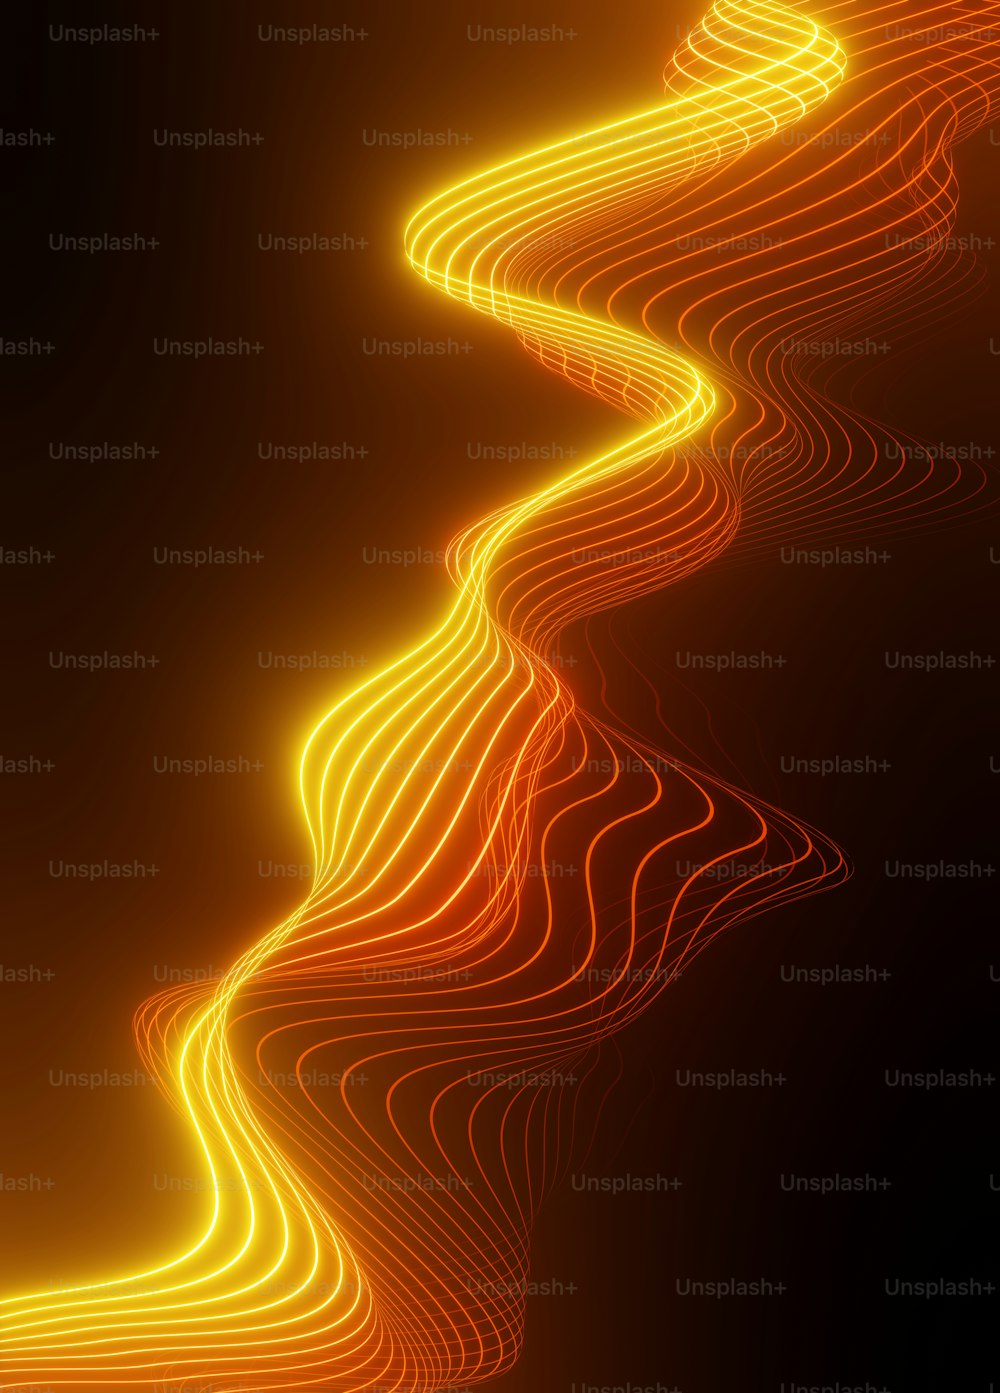 Ein abstraktes Bild einer wellenförmigen orangefarbenen Linie